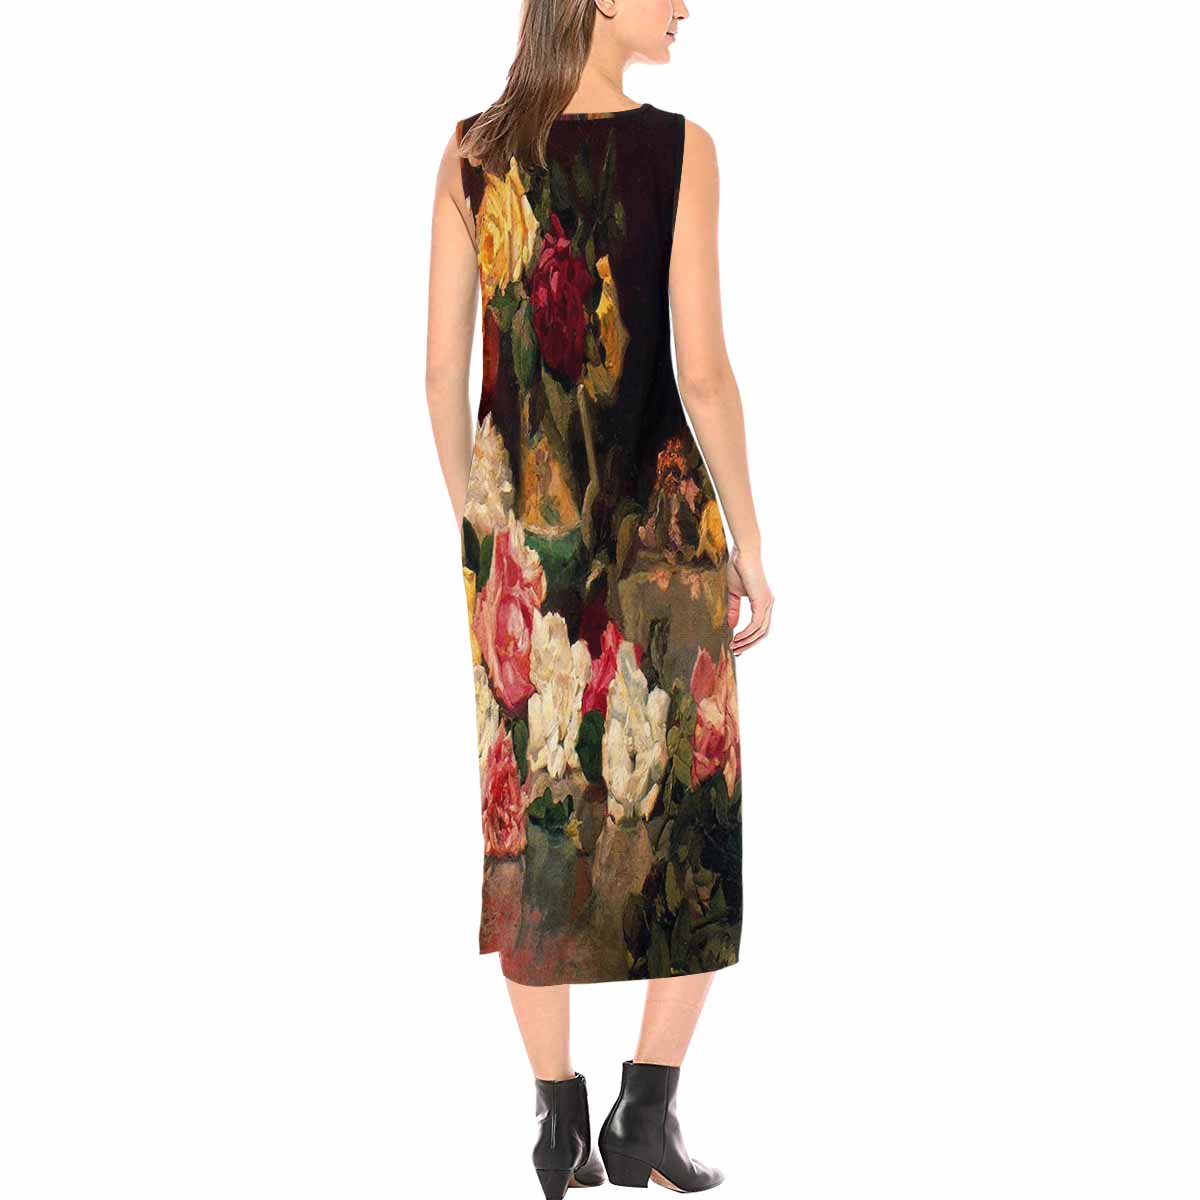 Vintage floral long dress, model D09538 Design 37